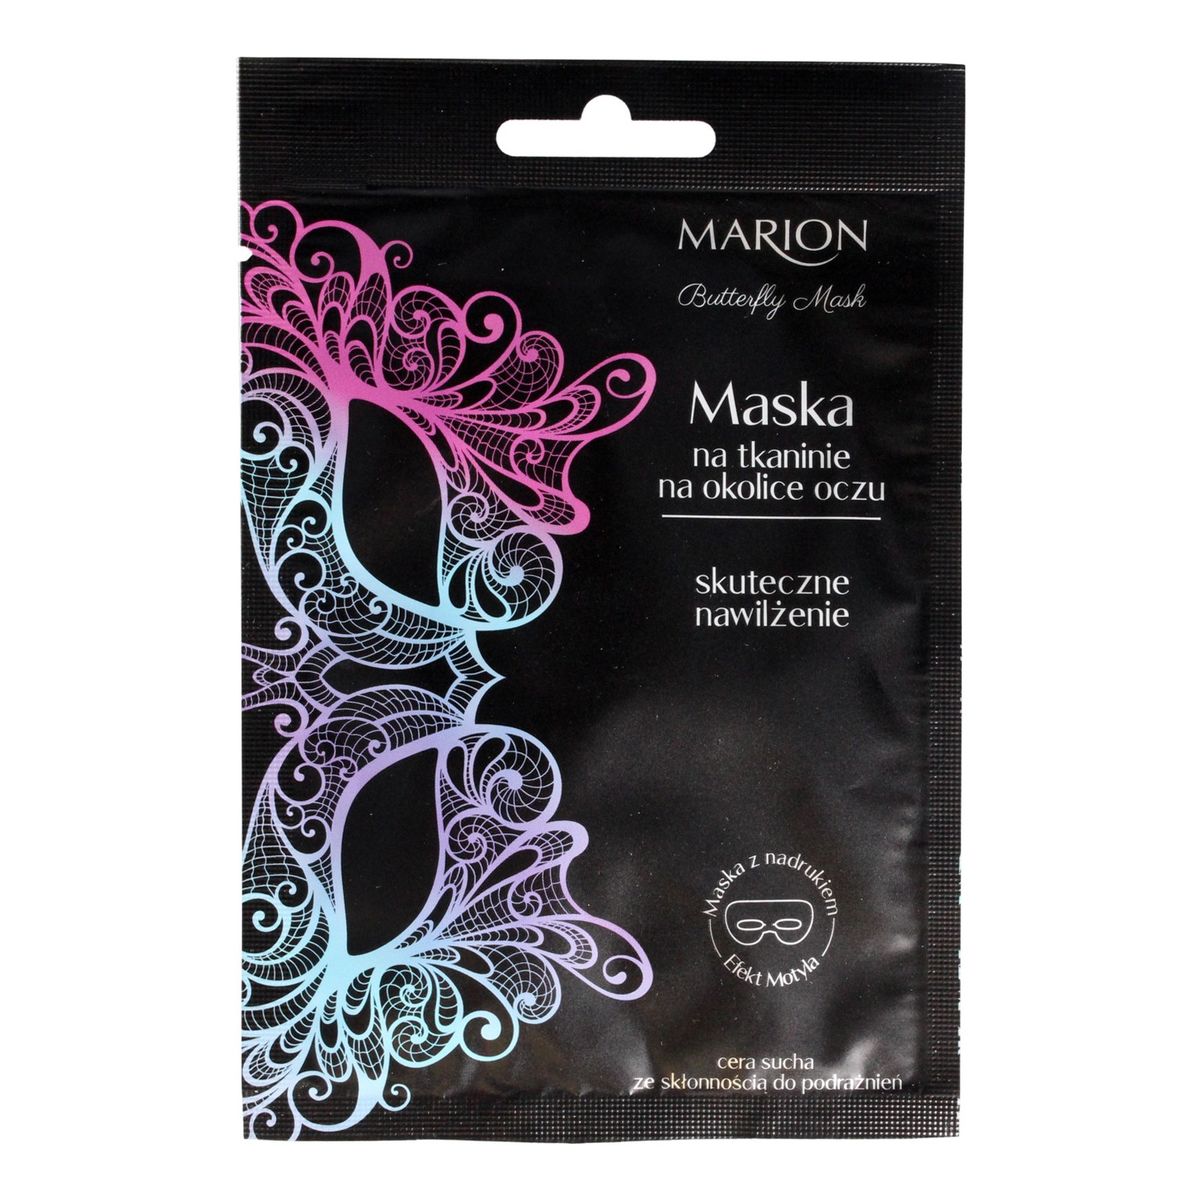 Marion Butterfly Mask Maska z nadrukiem na tkaninie na okolice oczu skuteczne nawilżenie